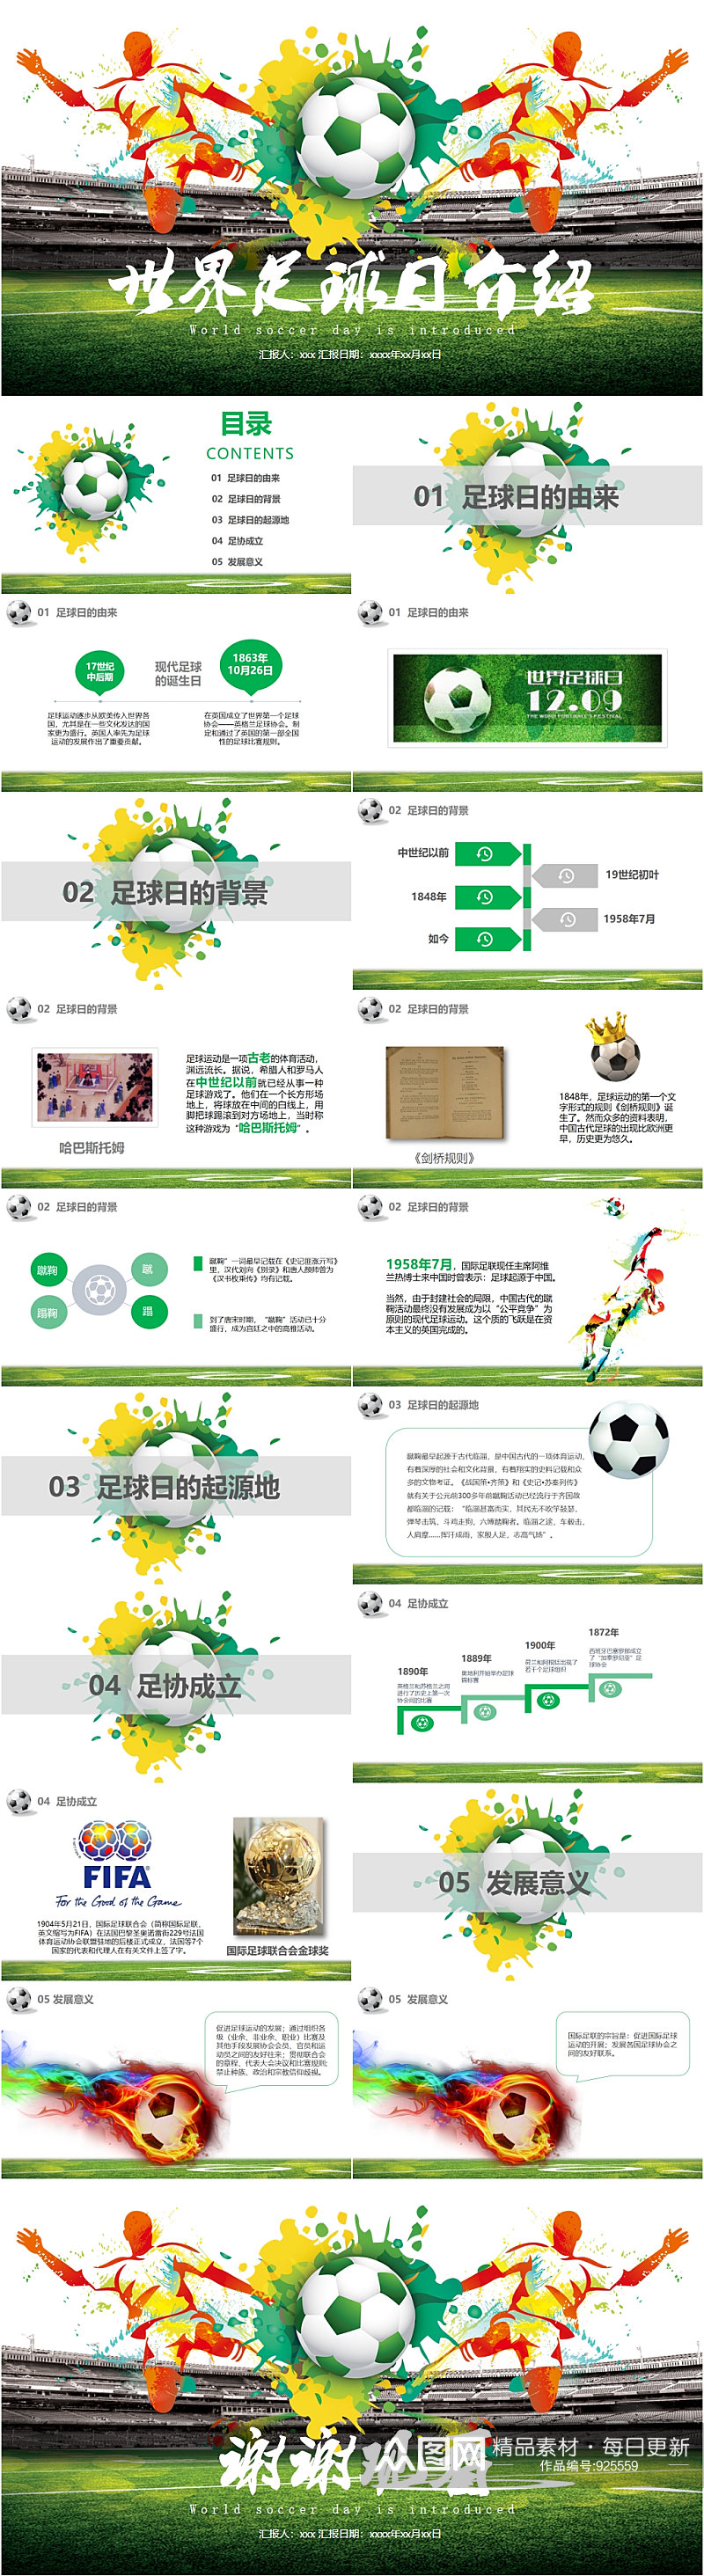 青春世界足球日体育运动介绍PPT模板素材